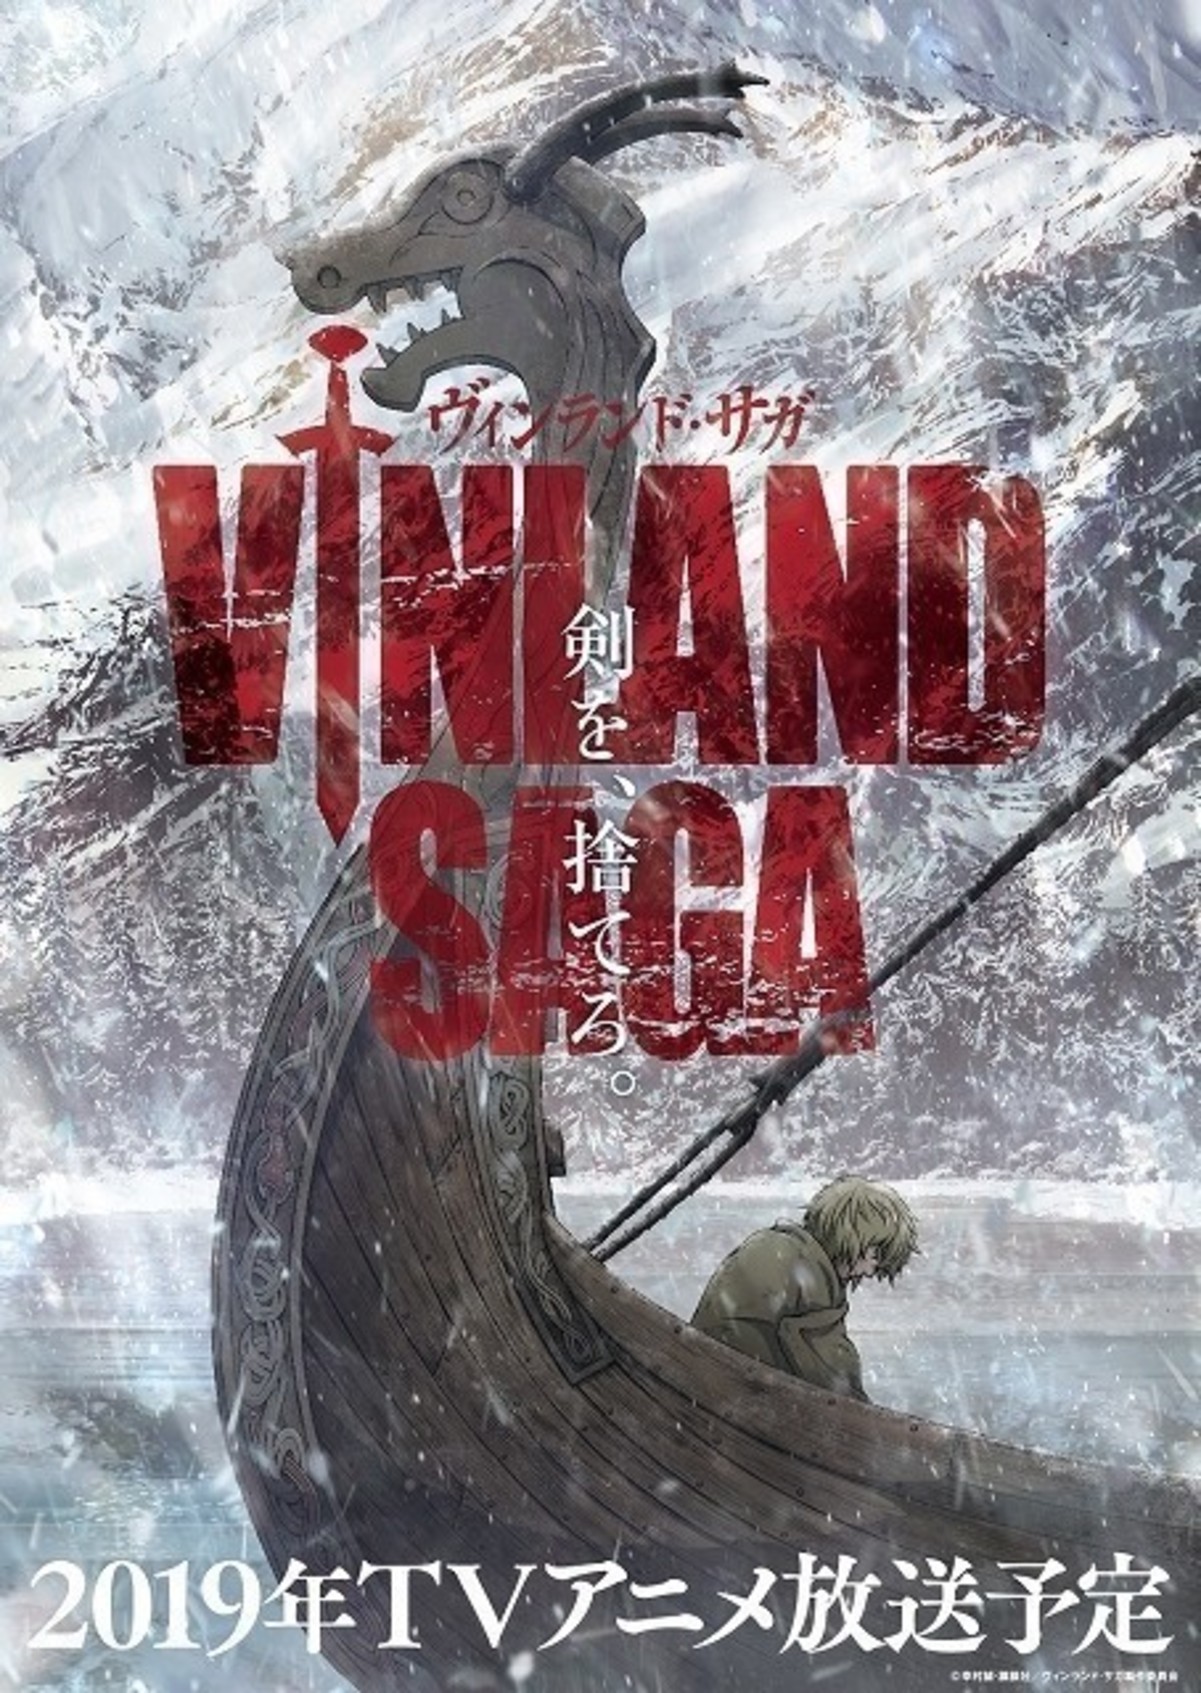 Vinland Saga: Season 2 - Vol. 2 Blu-ray (ヴィンランド・サガ) (Japan)